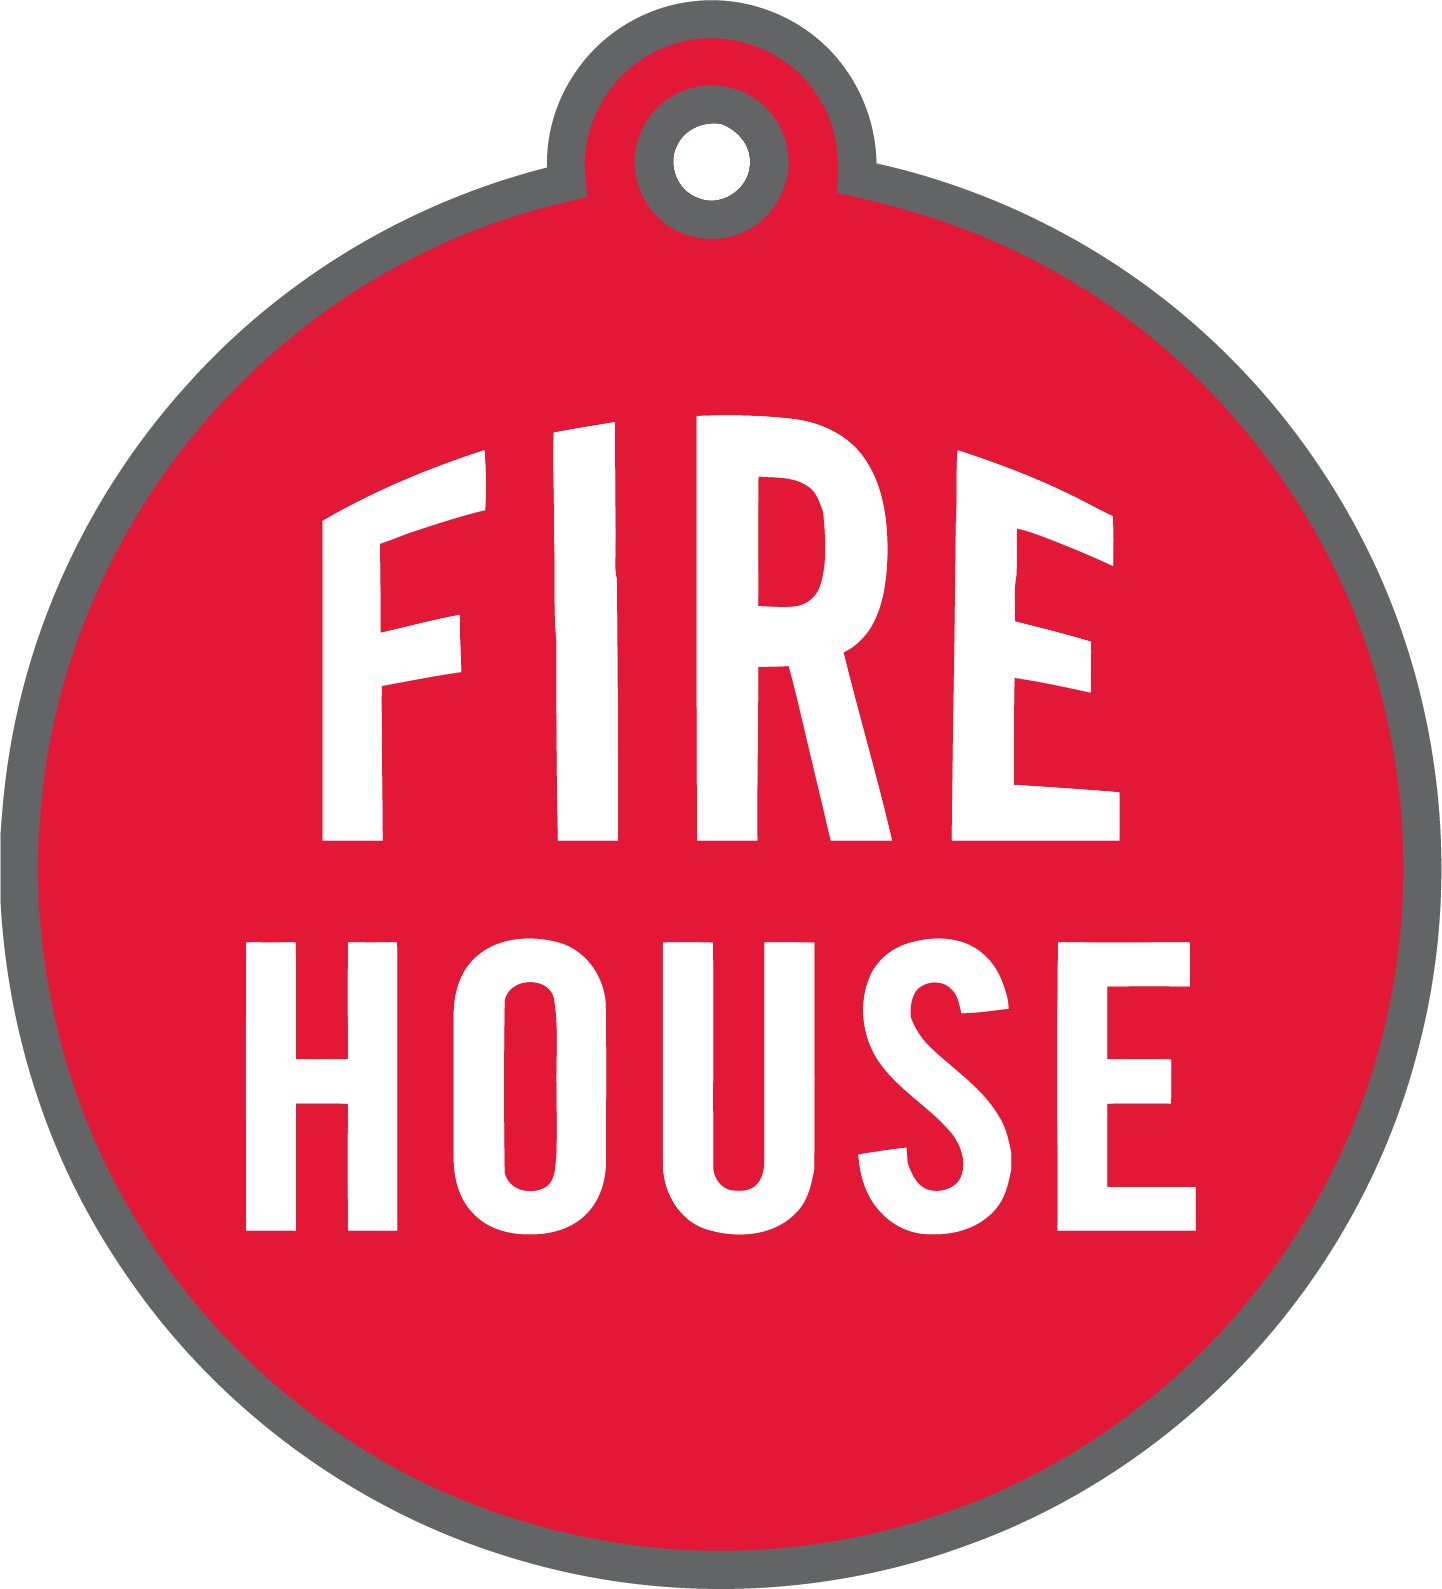 fire house written